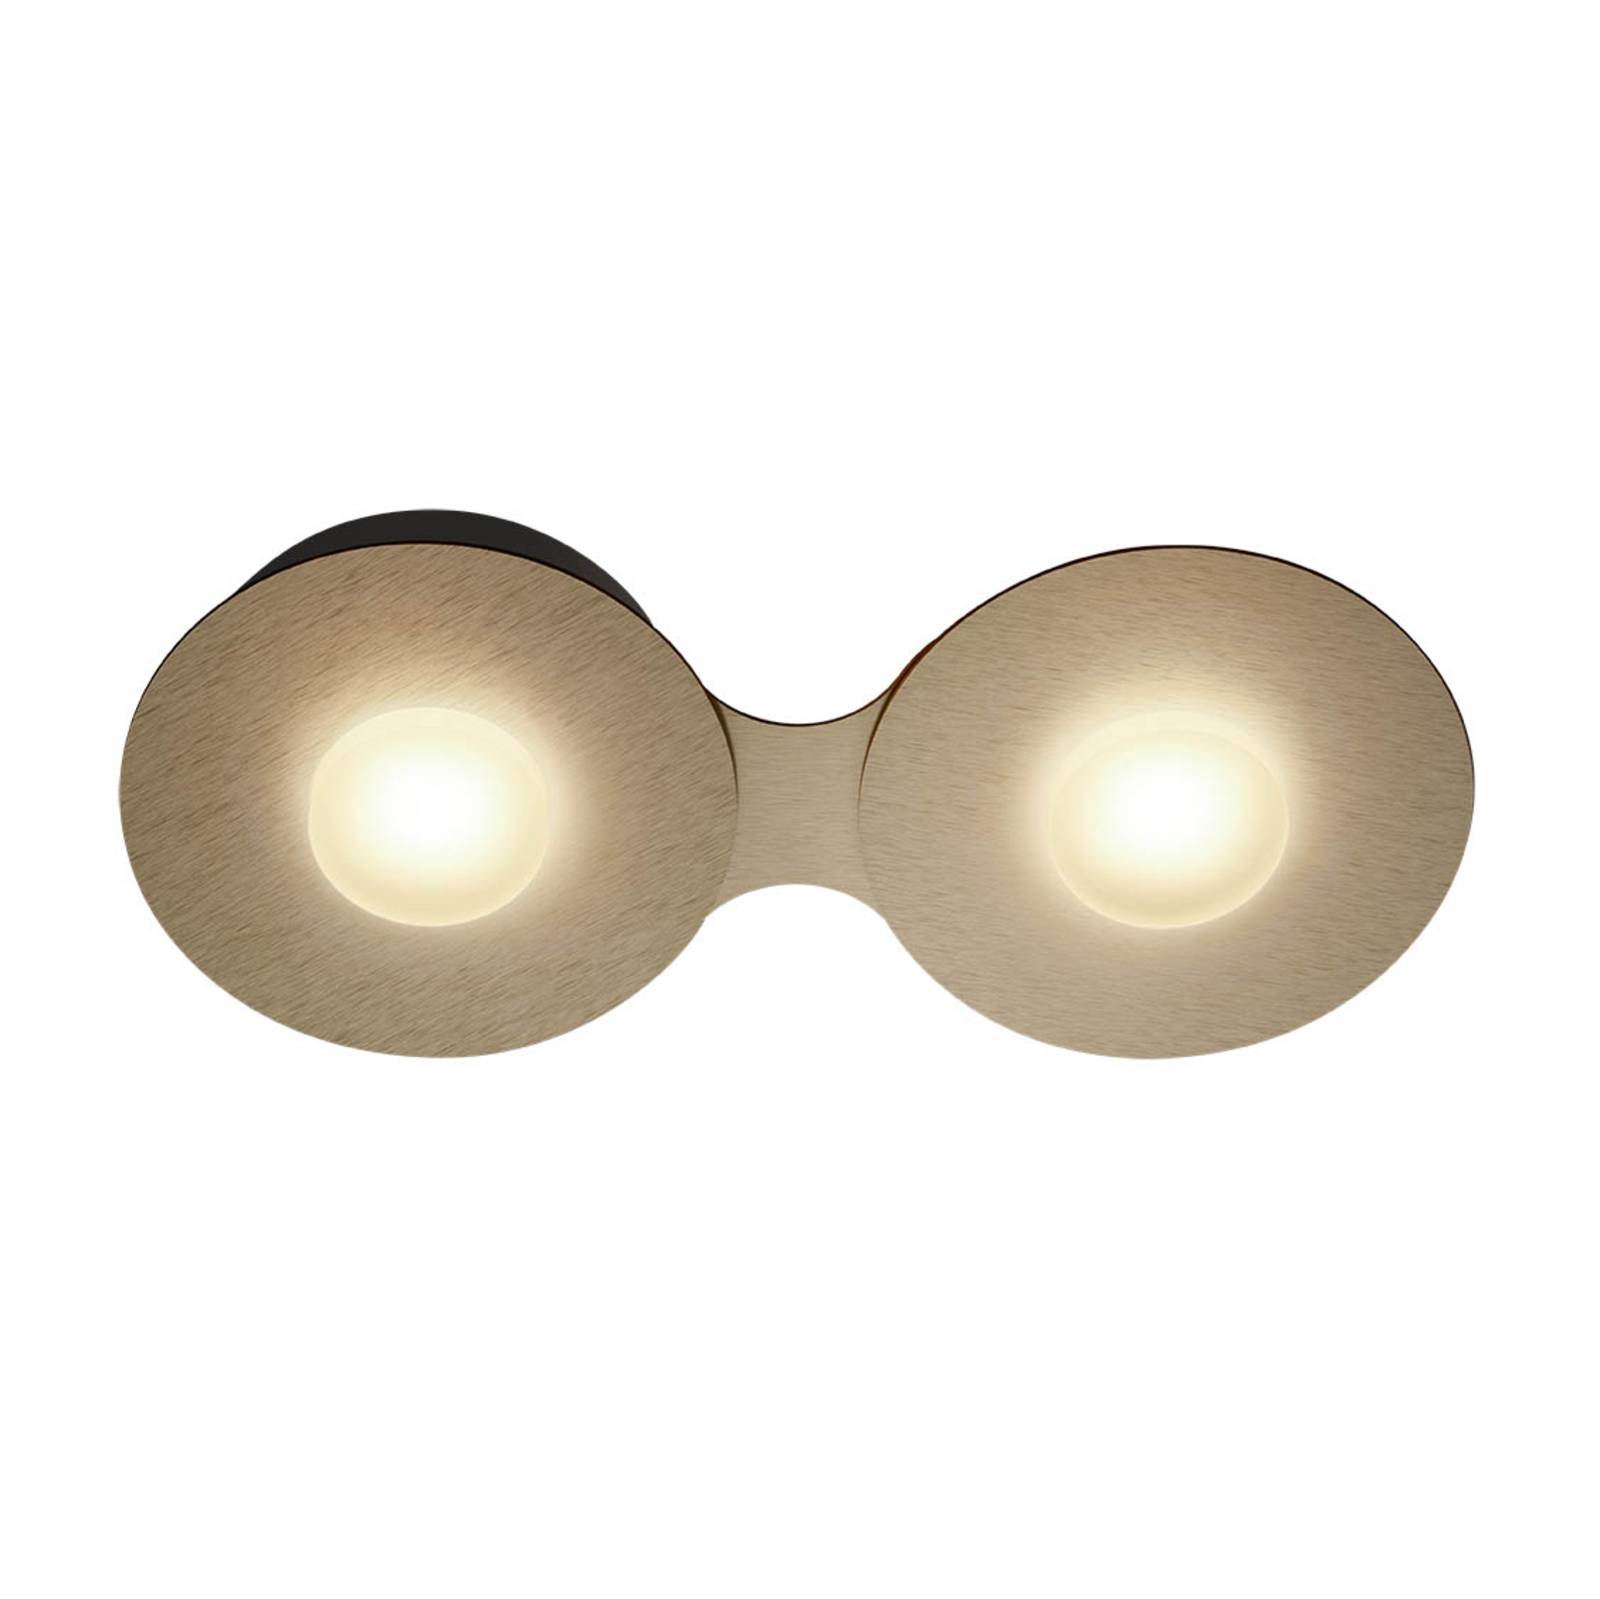 GROSSMANN Disc LED-Deckenleuchte, goldbraun, 2fl